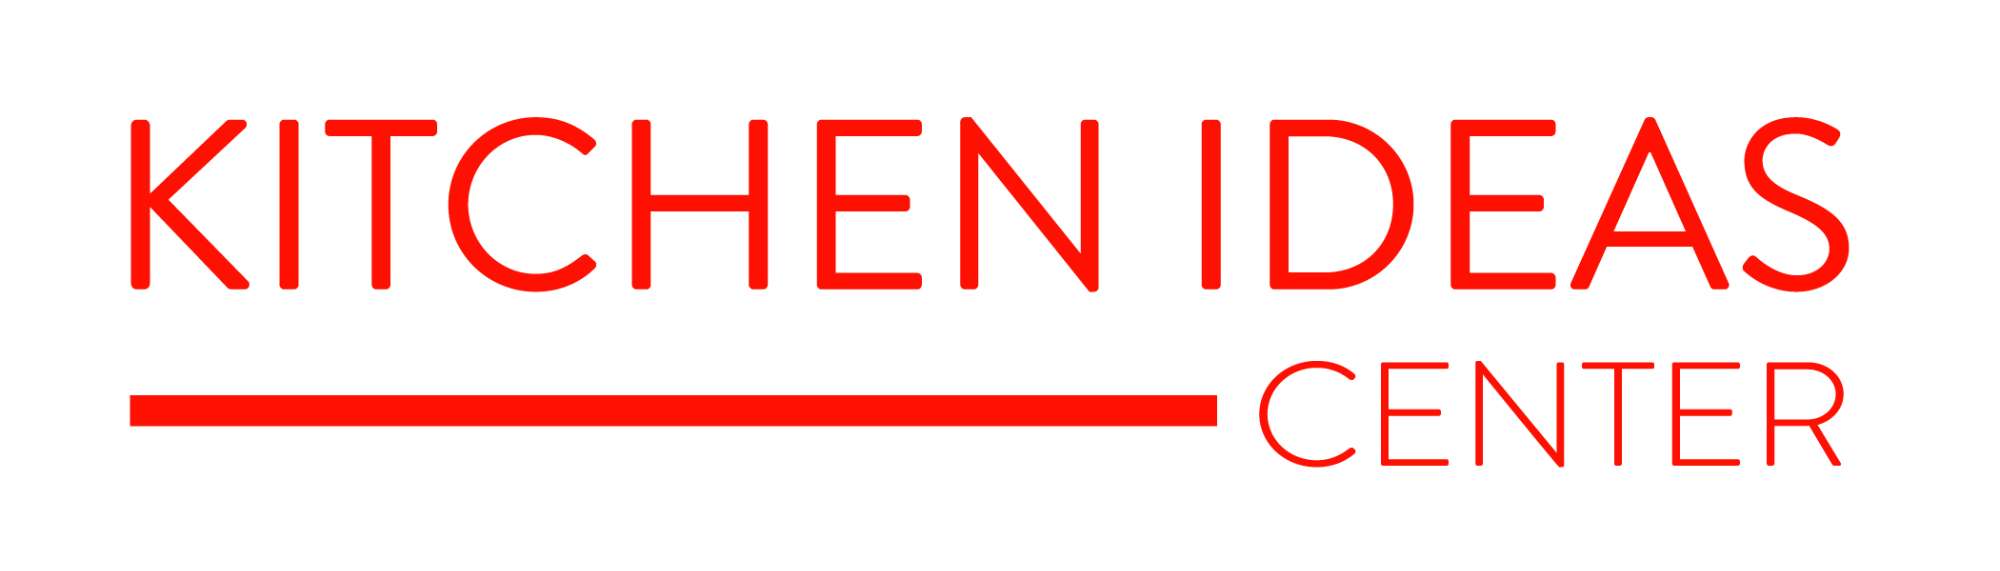 Kitchen Ideas Center logo